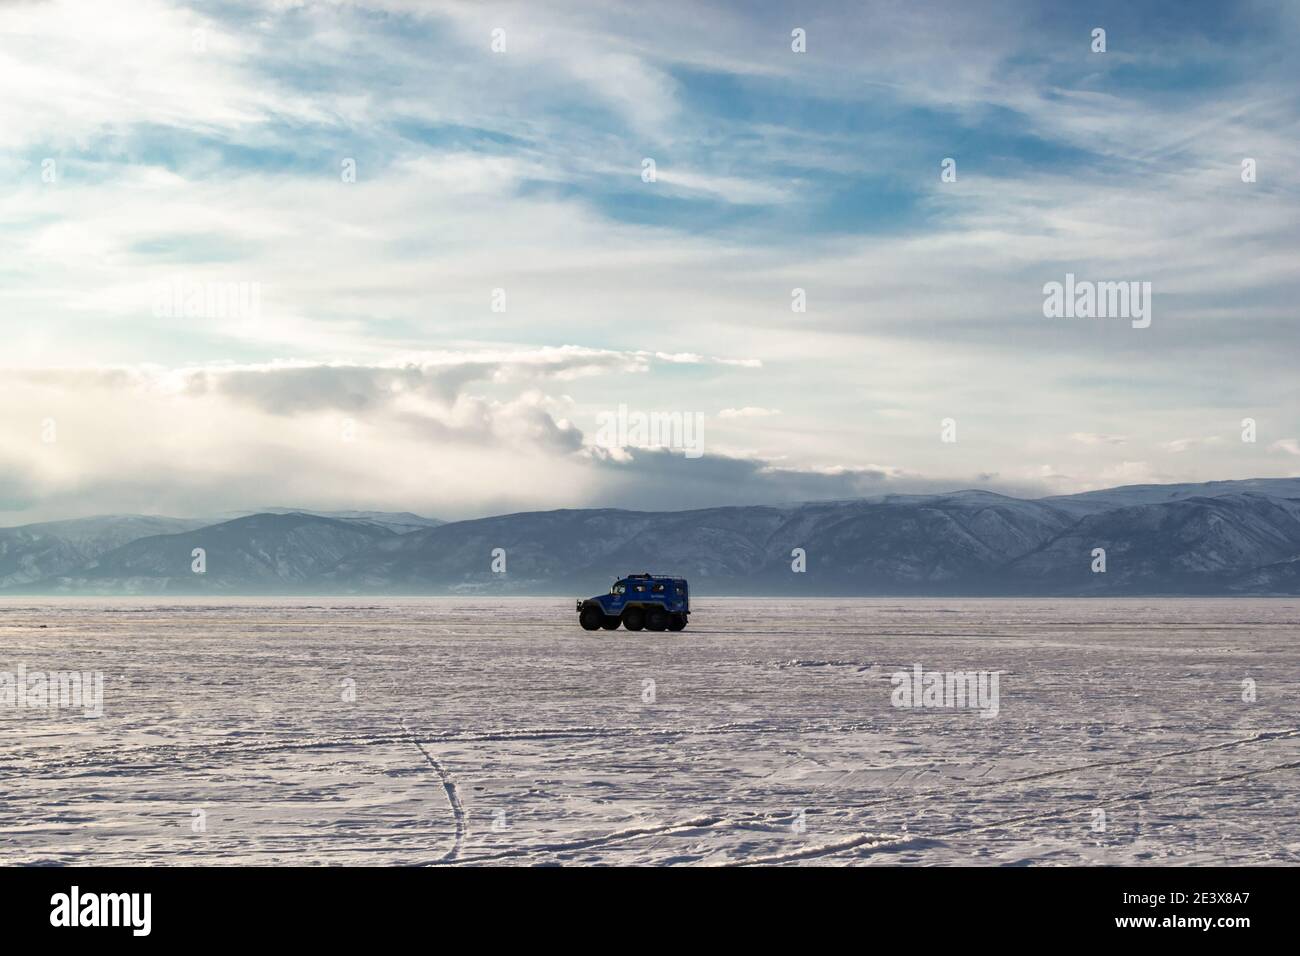 L'auto viaggia sul ghiaccio innevato del lago Baikal sullo sfondo delle montagne. Il concetto di guida fuoristrada in condizioni estreme. Foto Stock